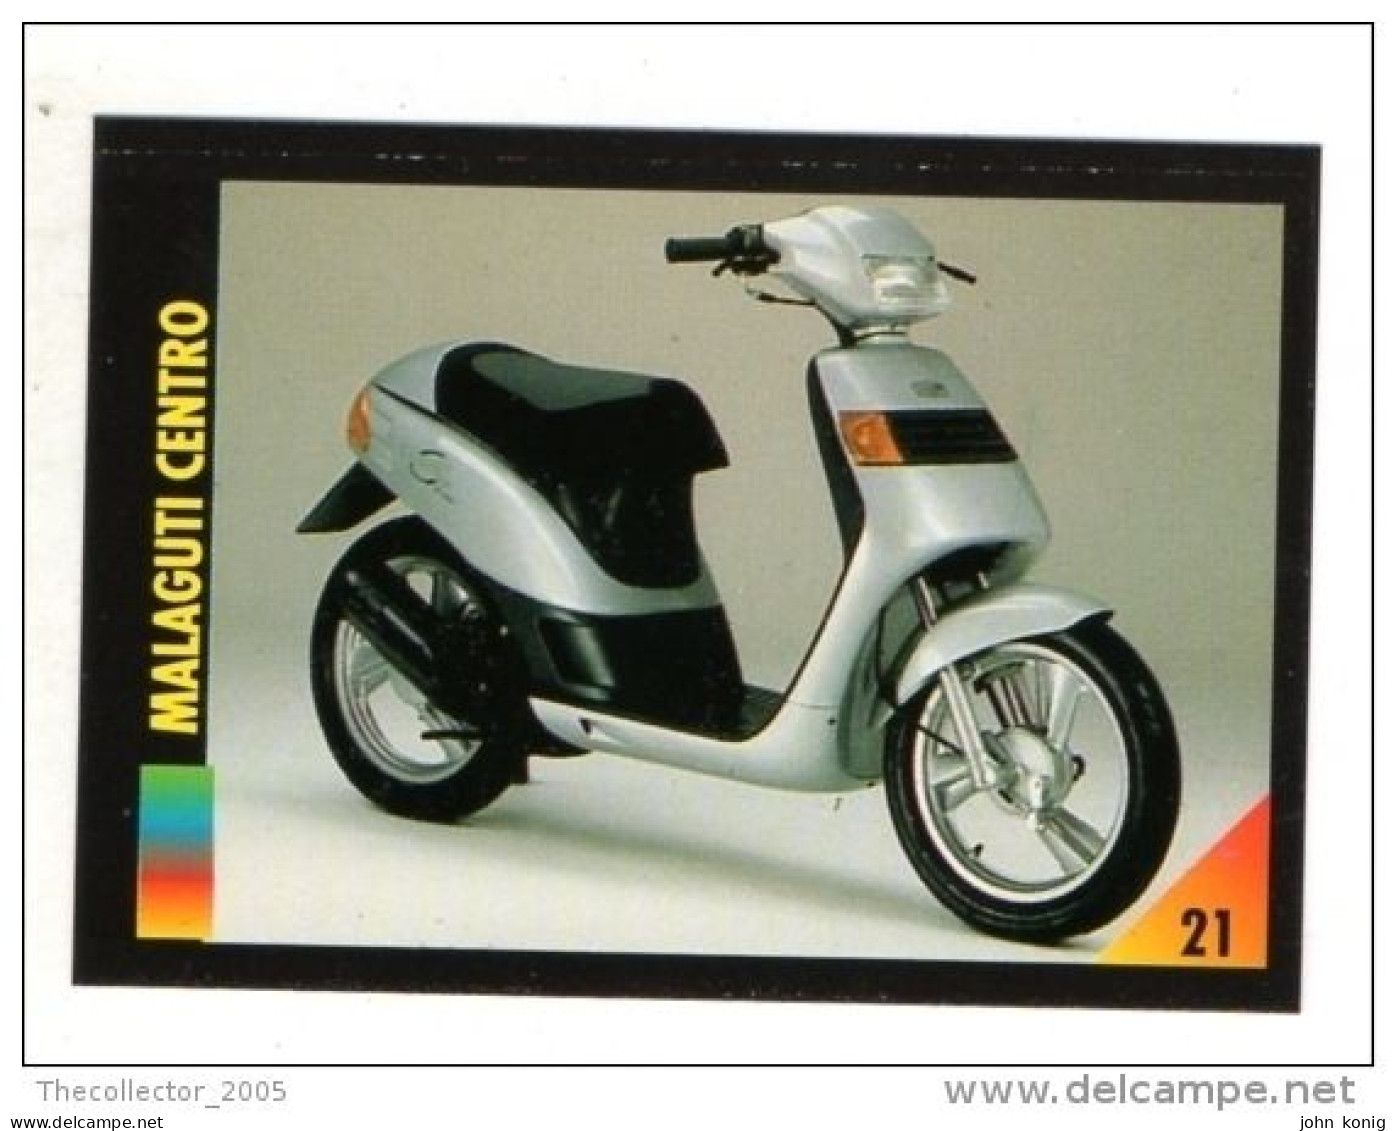 FIGURINA TRADING CARDS - LA MIA MOTO - MY MOTORBIKE - MASTERS EDIZIONI (1993) - MALAGUTI CENTRO - Auto & Verkehr